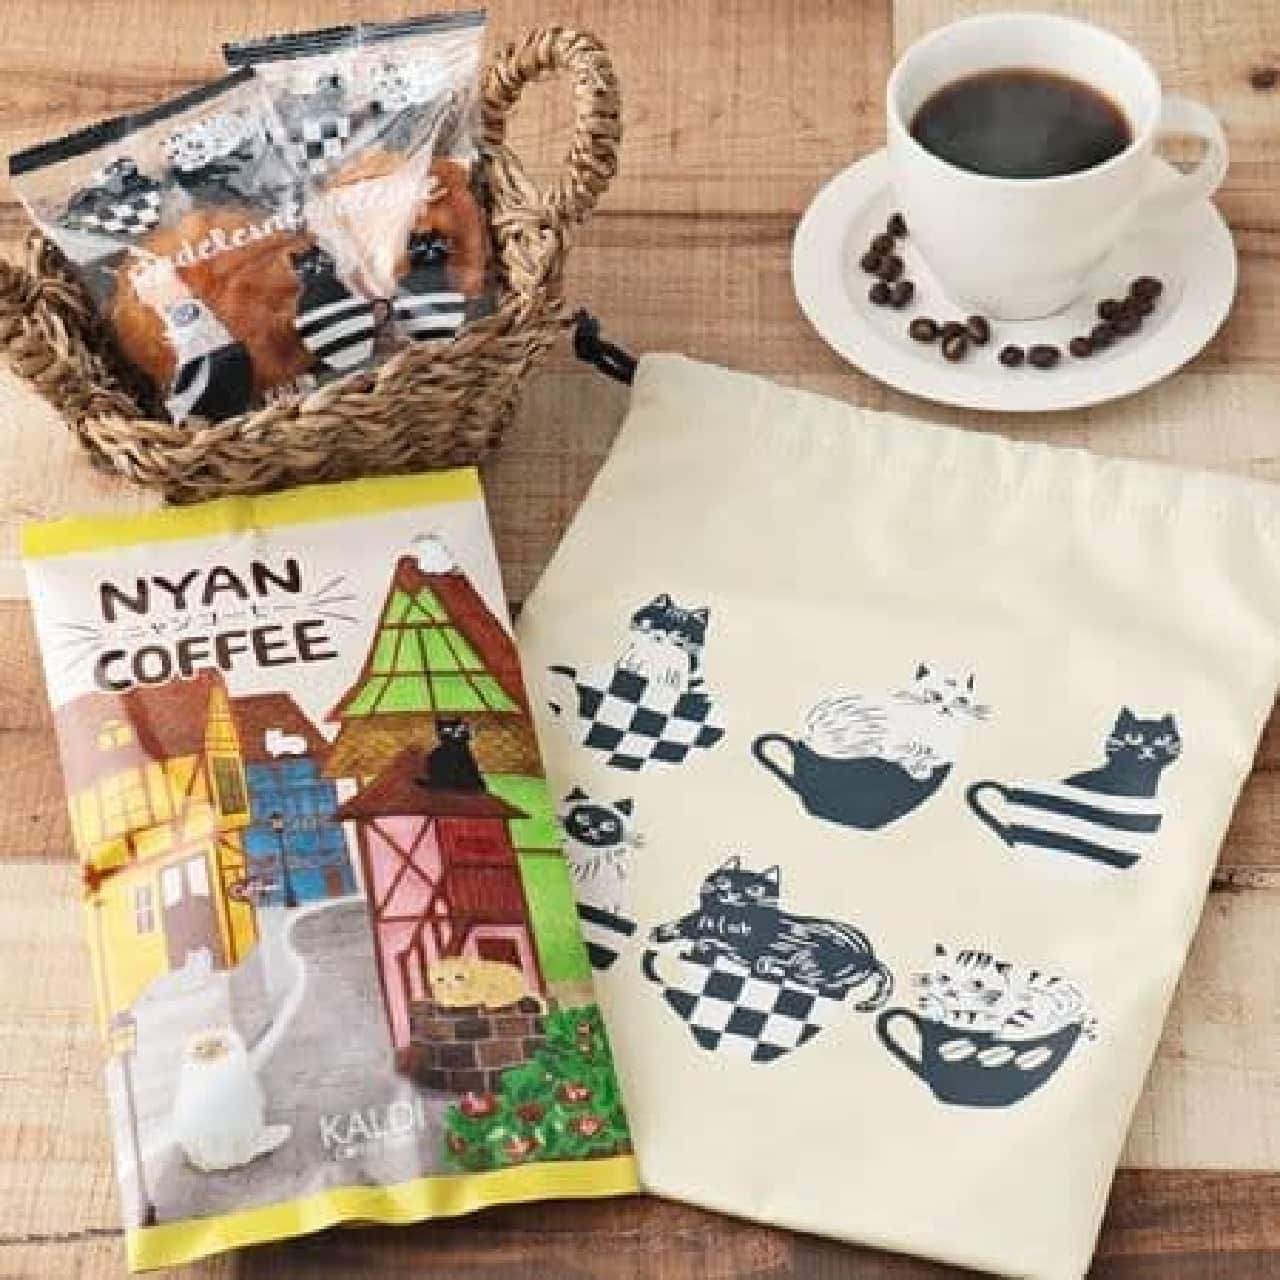 KALDI original Nyan coffee drawstring set